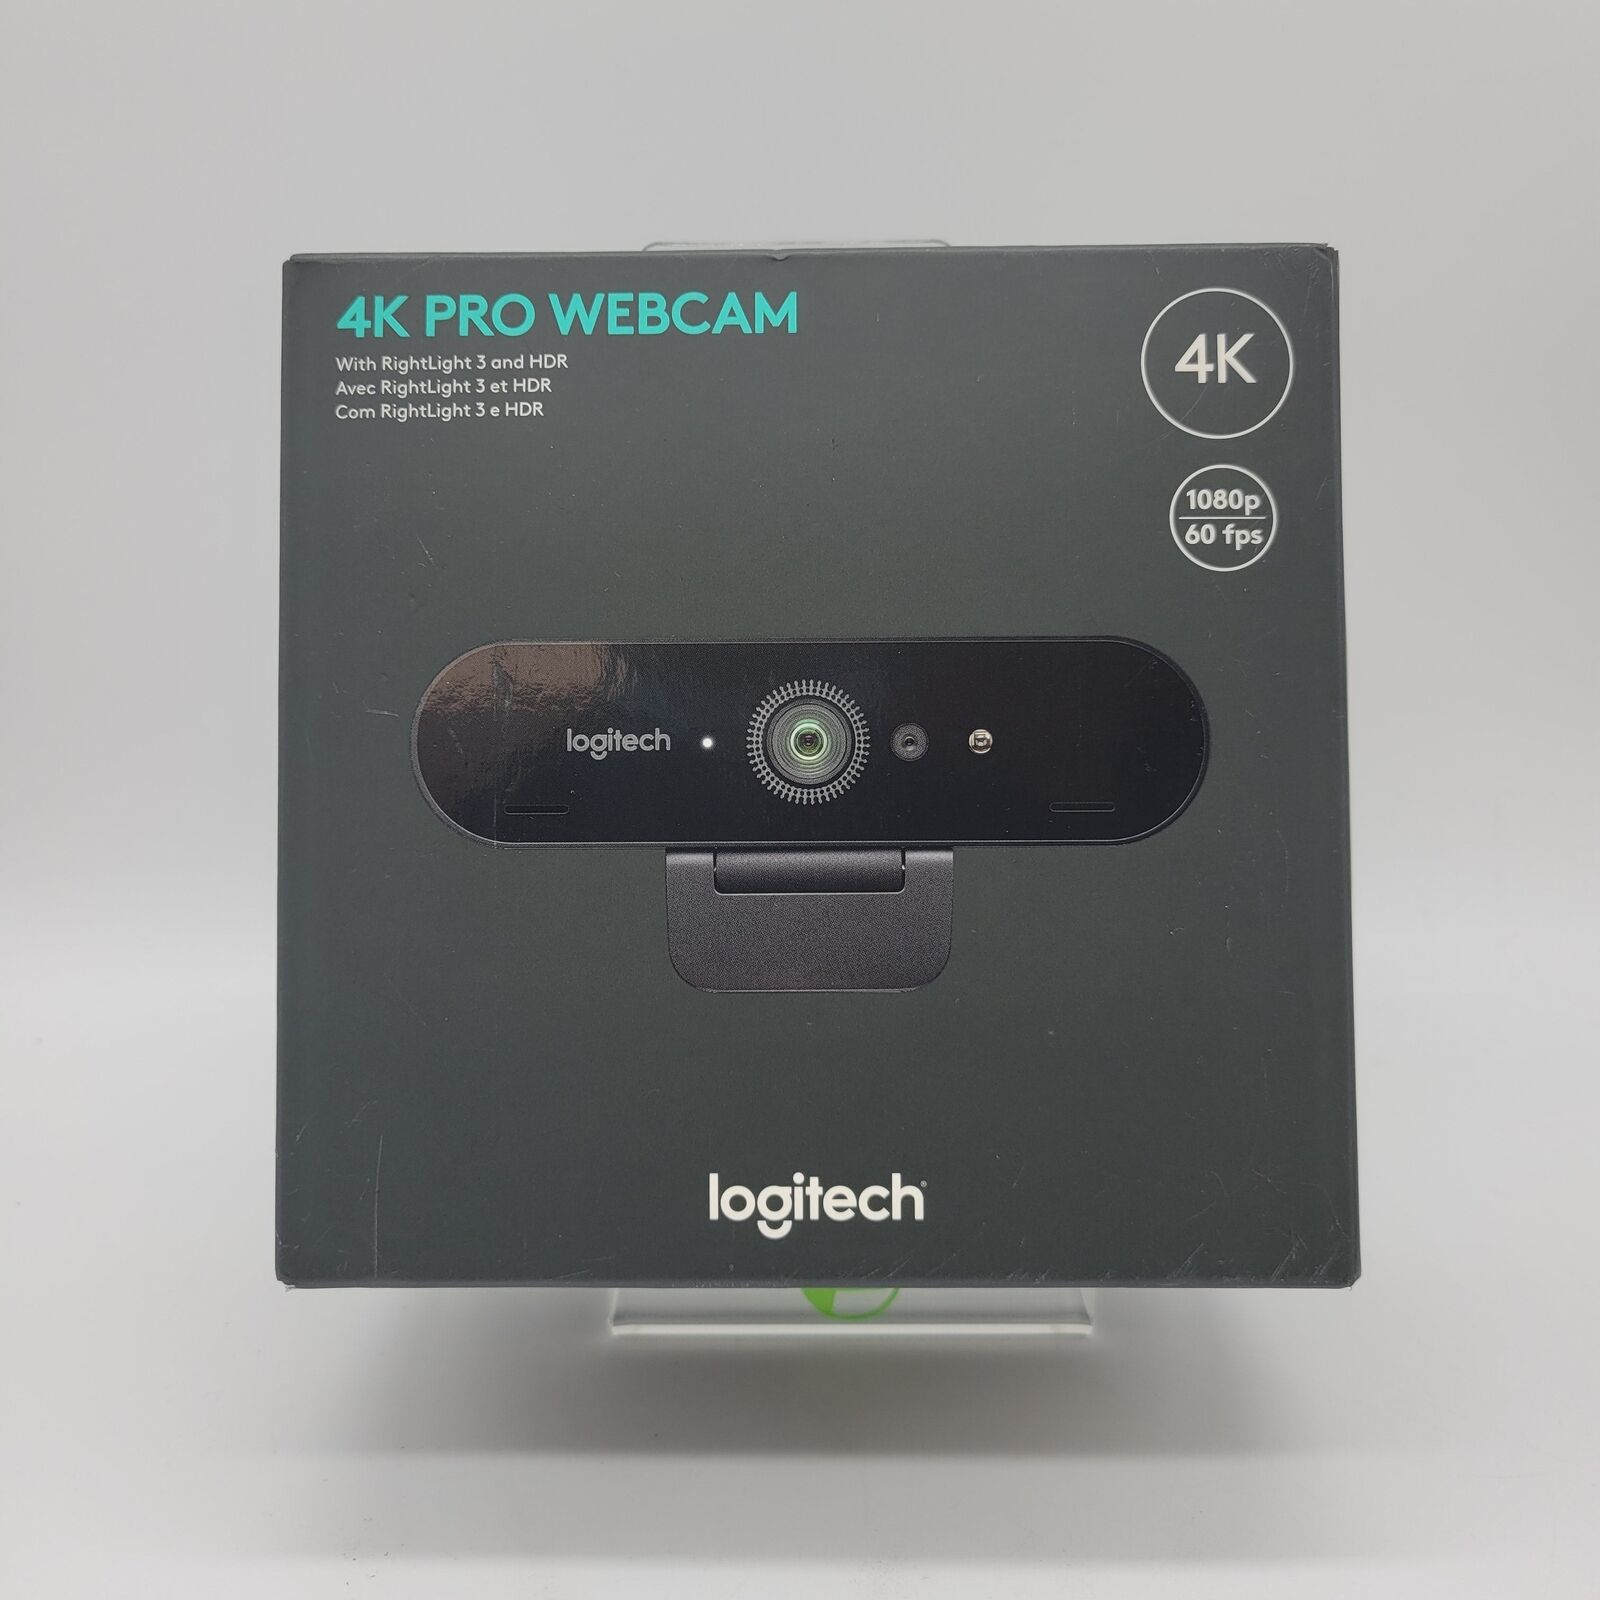 New Logitech 4K Pro Webcam 960-001390